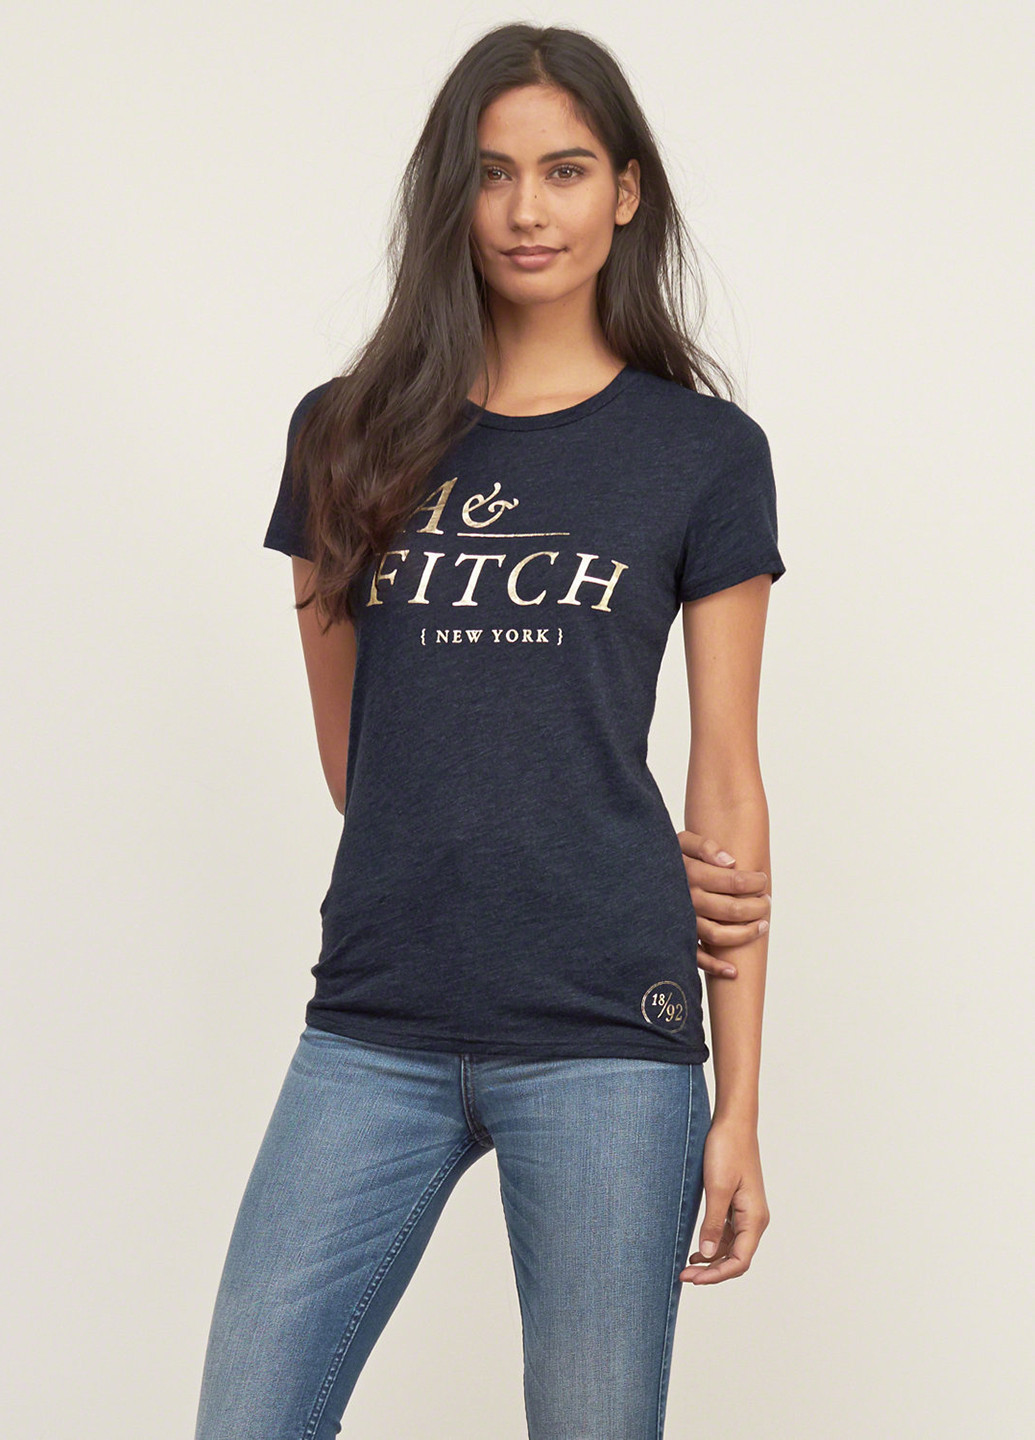 Темно-синяя летняя футболка Abercrombie & Fitch